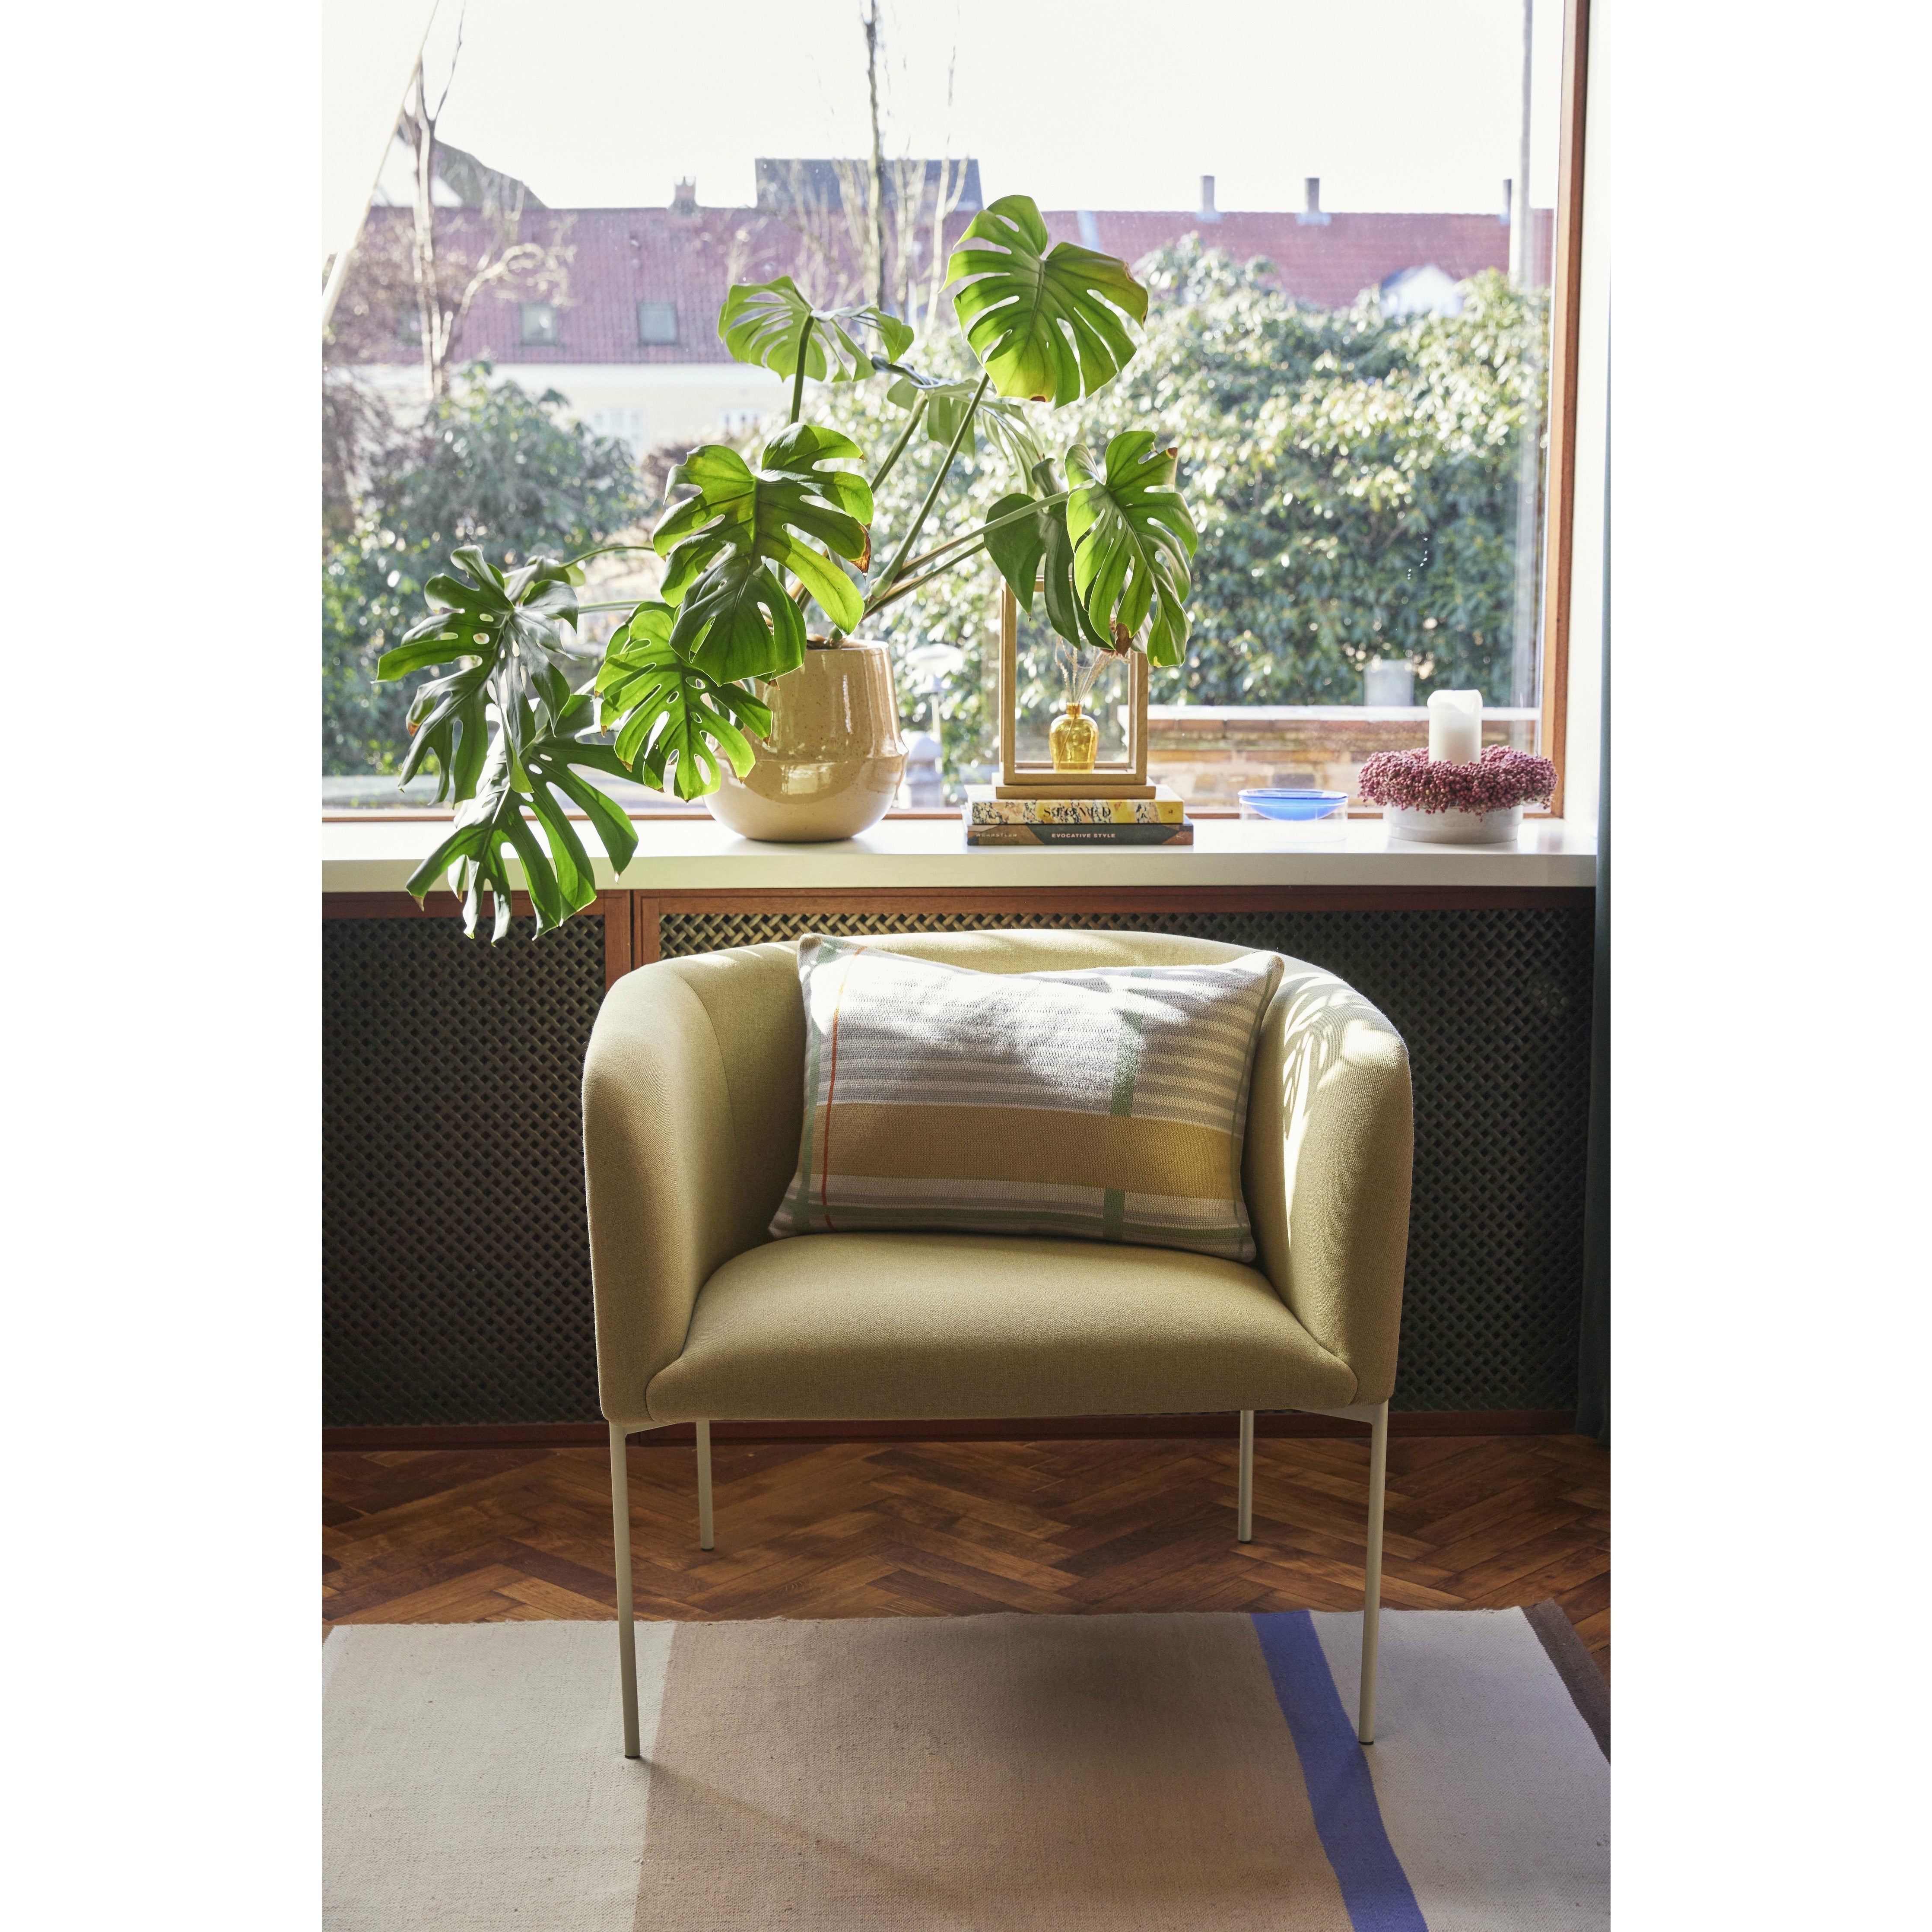 Hübsch Eyrie lounge stol polyester/metall gul/ljusgrön